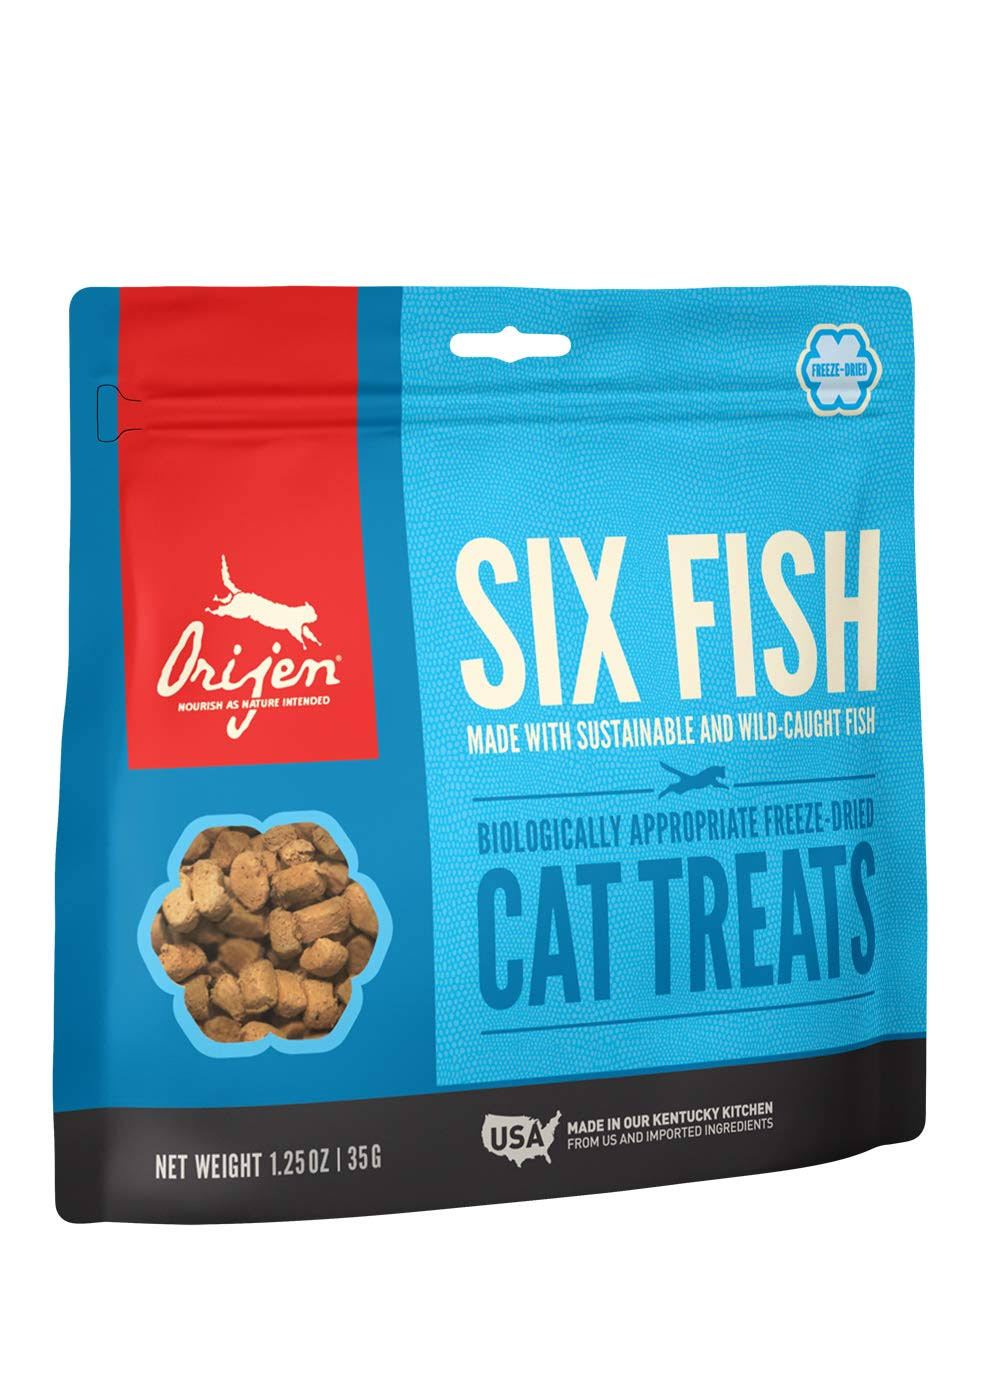 Orijen 35g Six Fish Freeze Dried Cat Treats